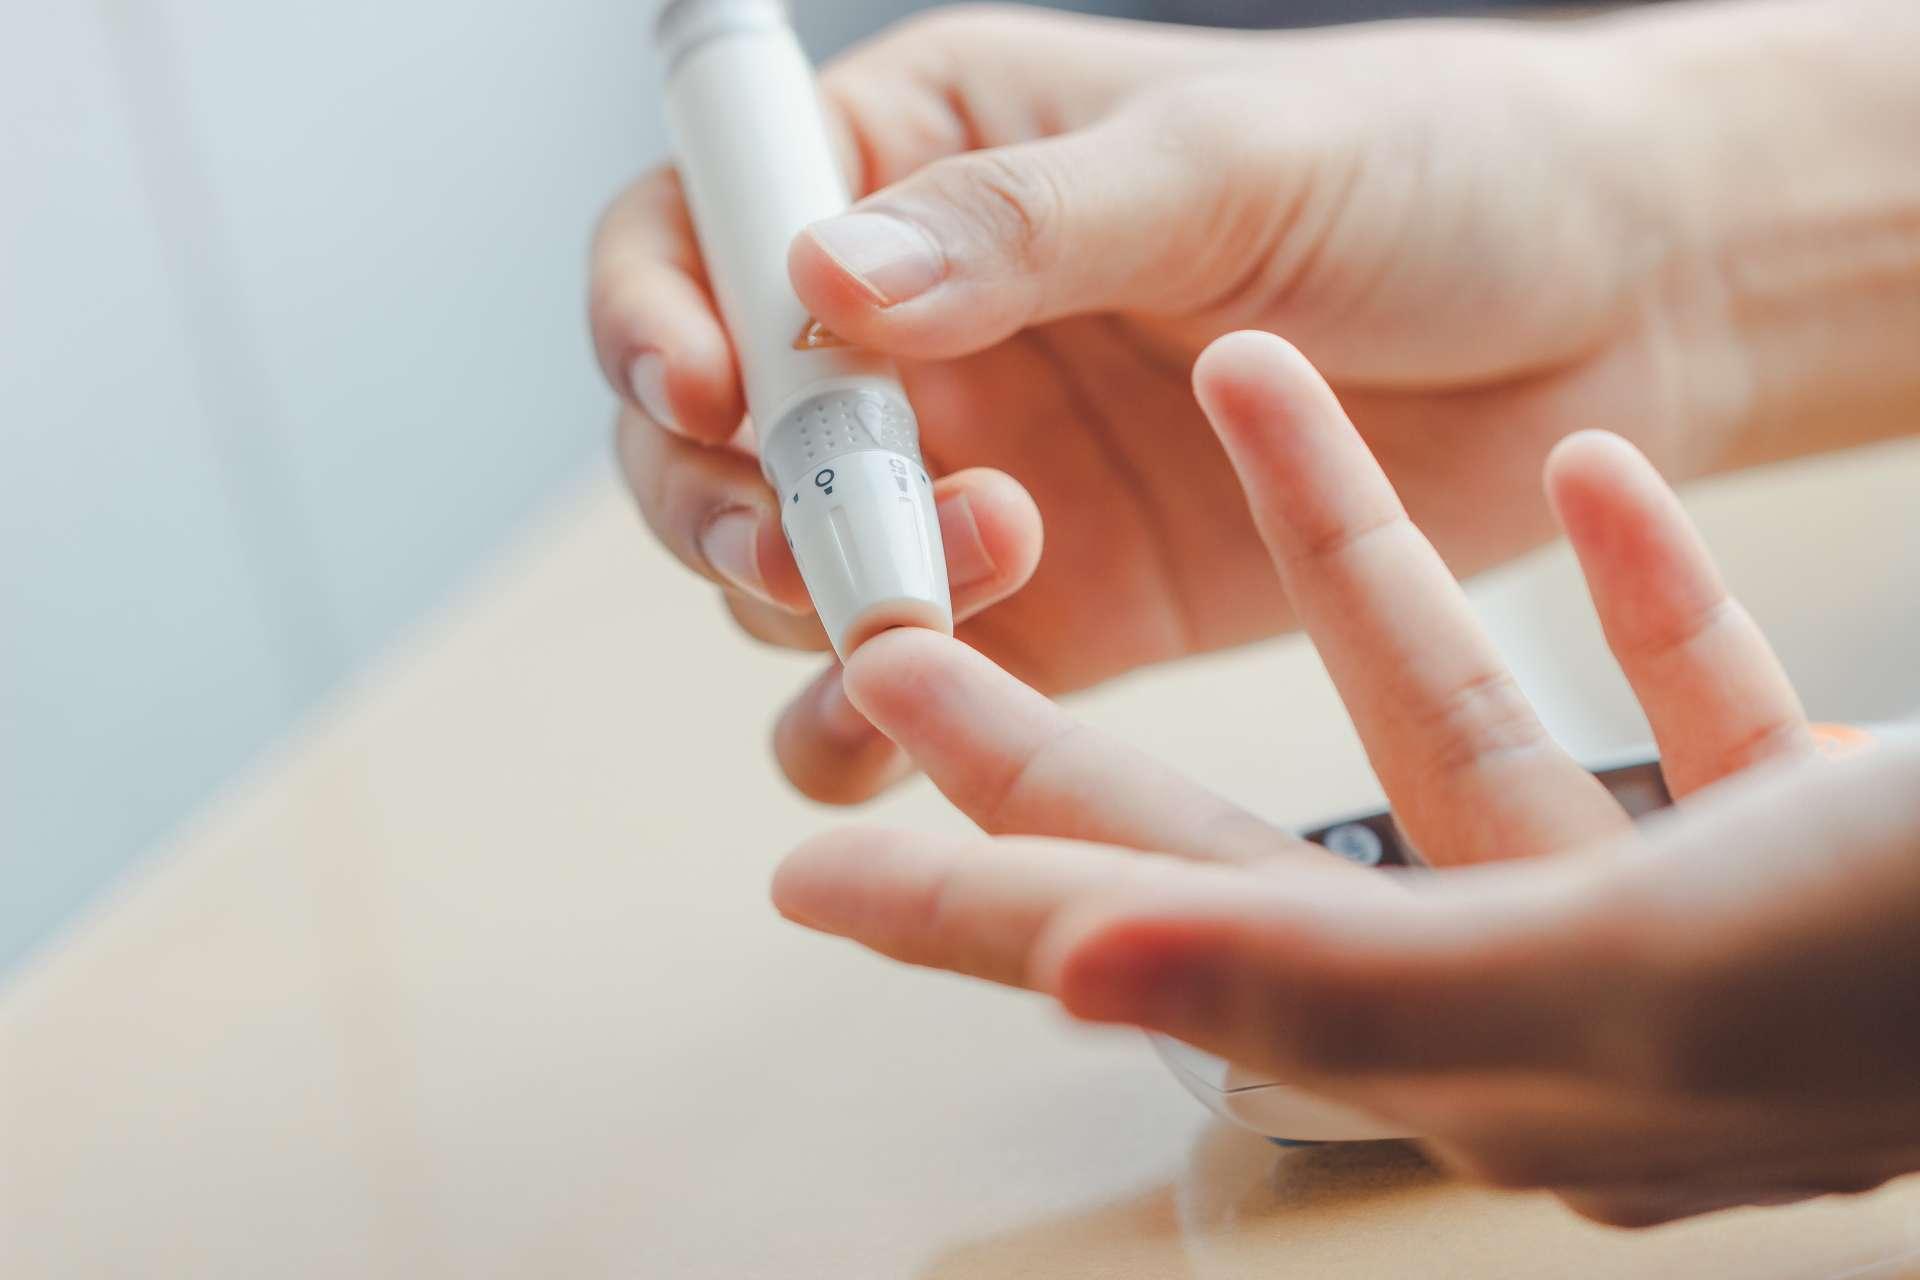 Nahaufnahme von Frauenhänden unter Verwendung der Lanzette am Finger, um den Blutzuckerspiegel durch Glukosemessgerät unter Verwendung als Medizin zu überprüfen